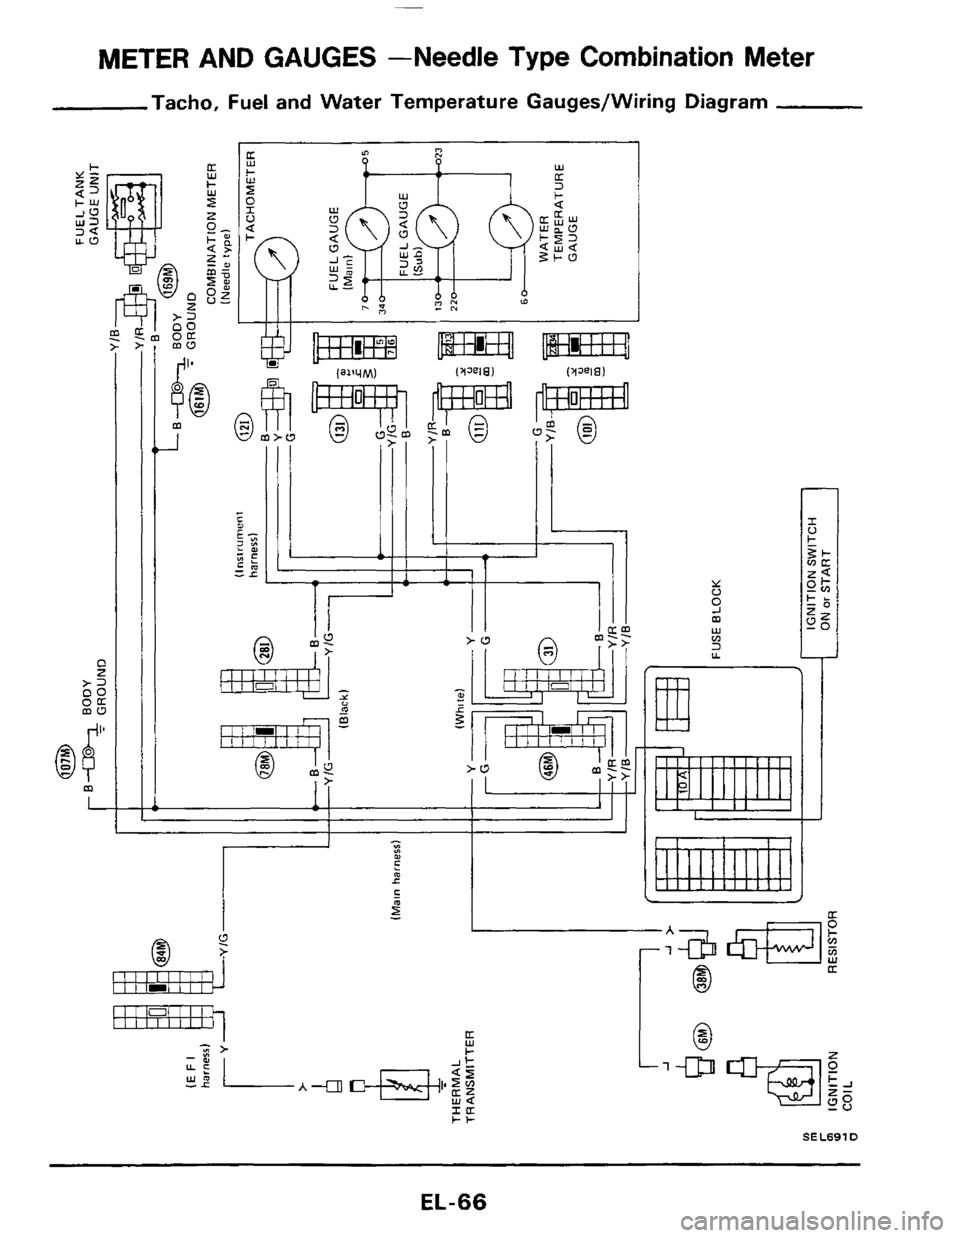 NISSAN 300ZX 1984 Z31 Electrical System Repair Manual METER AND GAUGES  -Needle Type Combination Meter 
Tacho,  Fuel  and Water  Temperature  Gauges/Wiring  Diagram 
C z >= oc 
:E 
I 
6$ m 
L 
m 
_I 
I I 
Y - m - 
llllllI 
1: 
I 
I1 I01 I I I IIIIIIII 
r